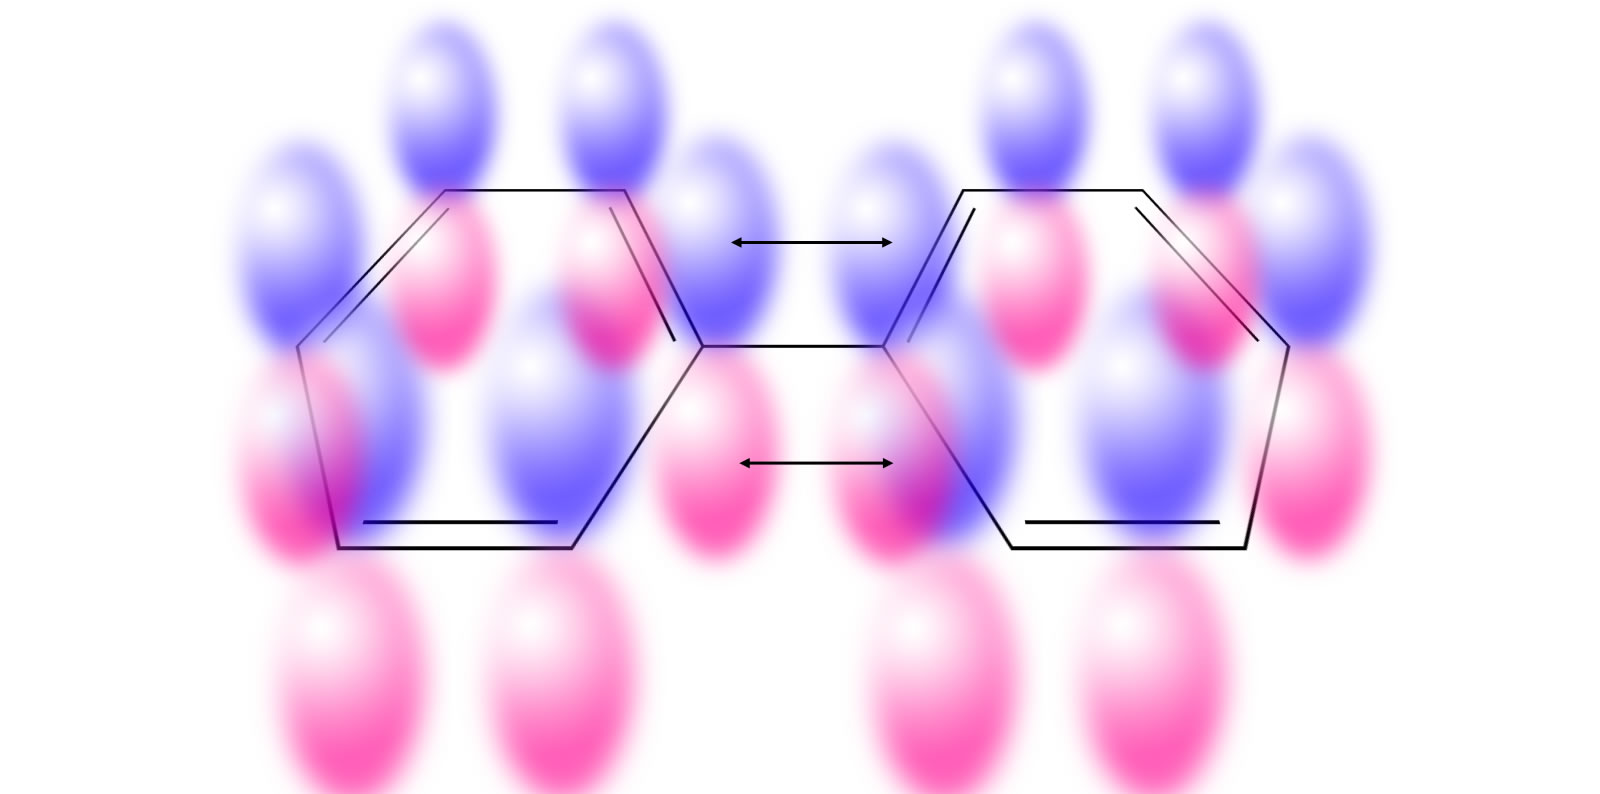 Das Biphenyl-Molekül mit den pz-Orbitalen